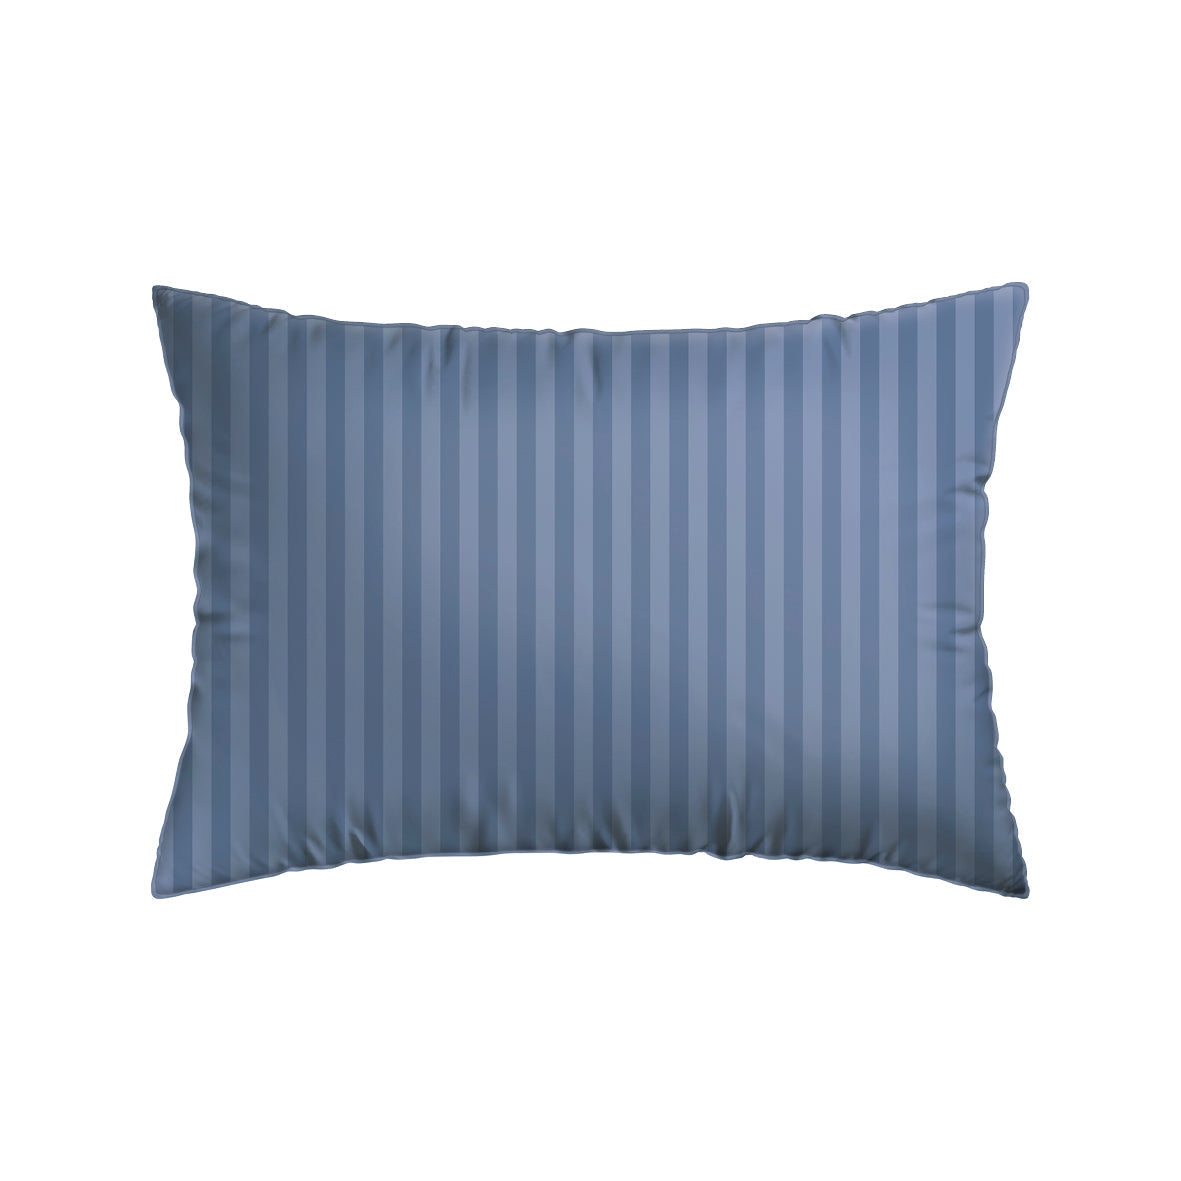 pillowcase(s) cotton satin dobby stripe woven Blue